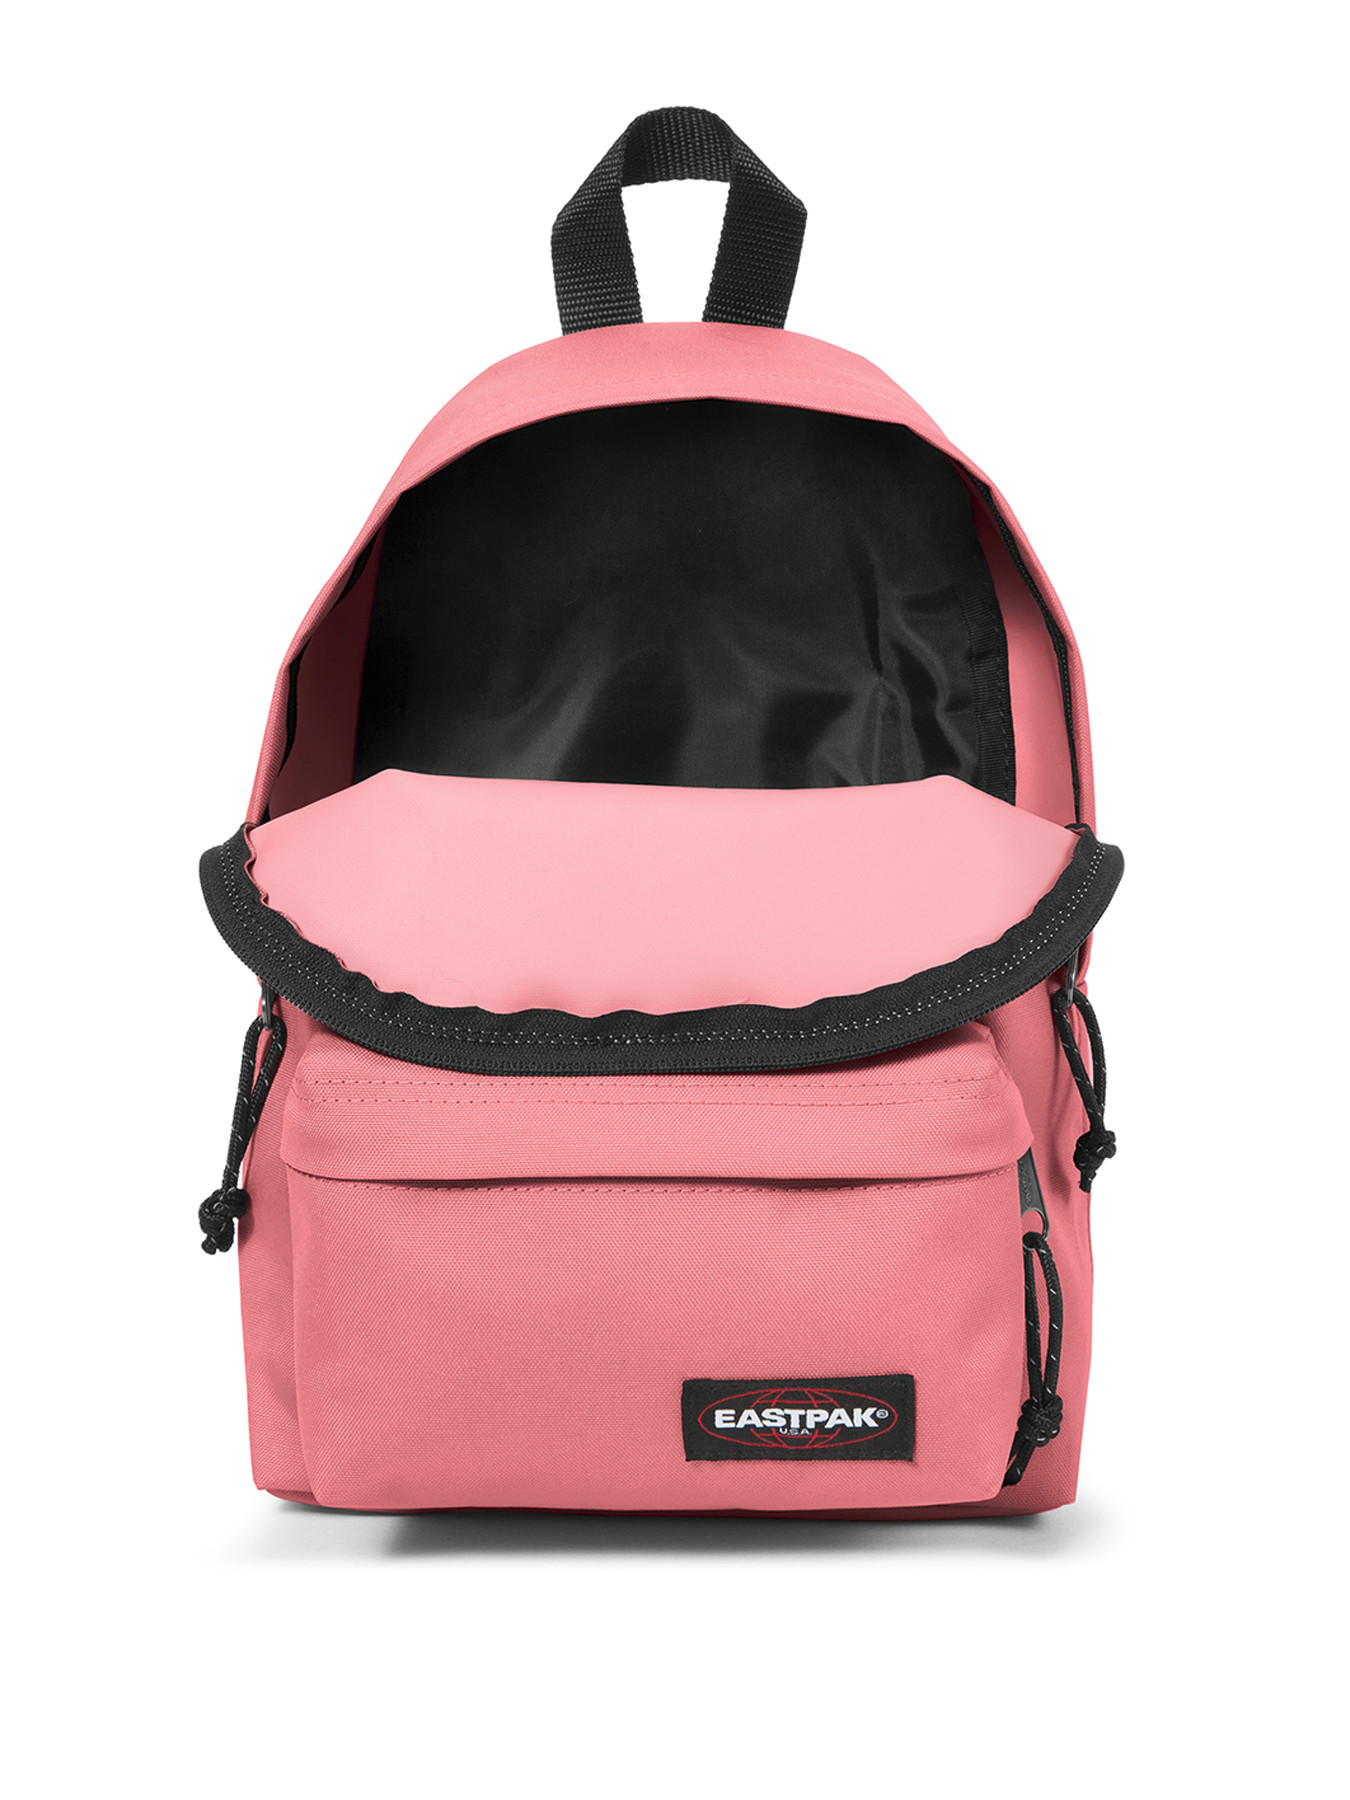 Eastpak Orbit Backpack | Fenwick